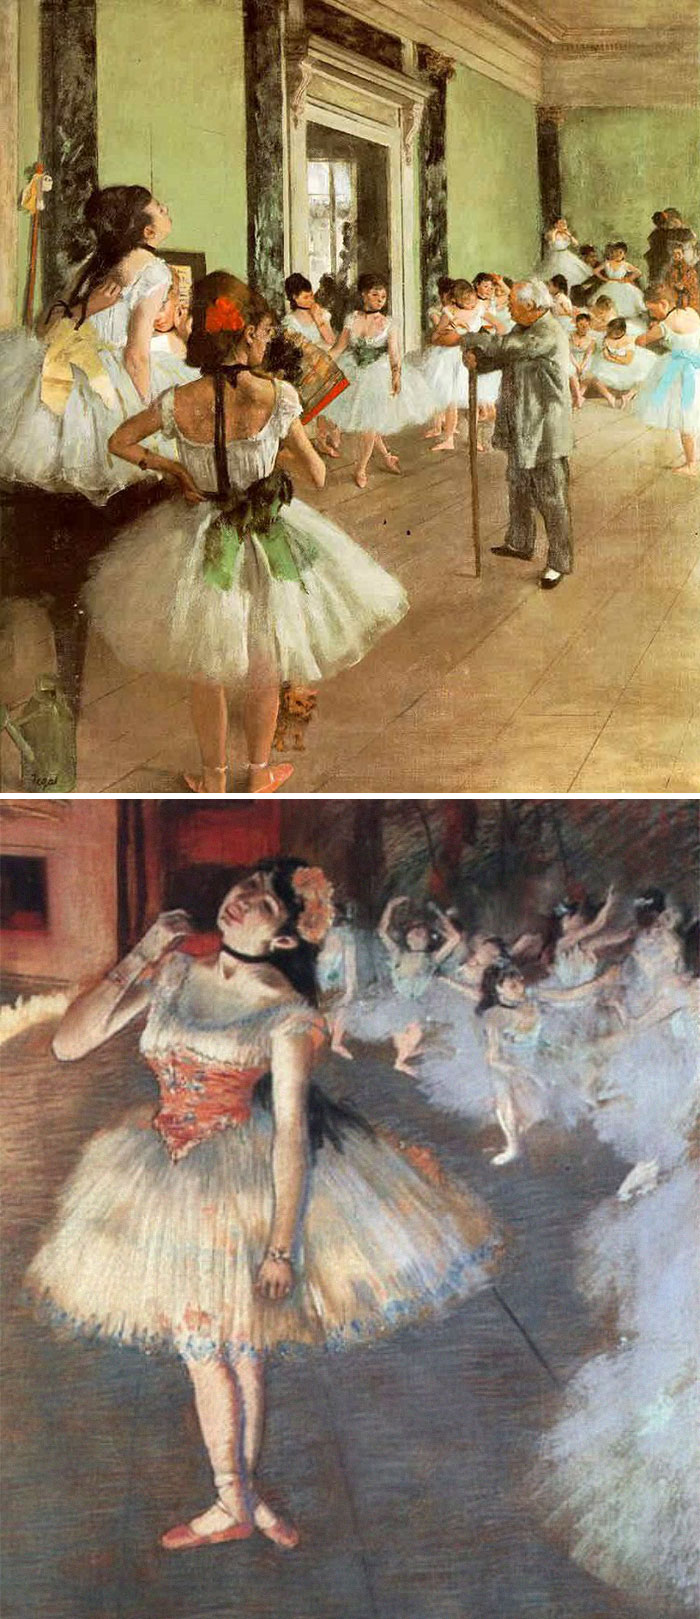 Degas Jak rozpoznać słynnych malarzy? Skuteczny przewodnik po sztuce z lekkim przymrużeniem oka